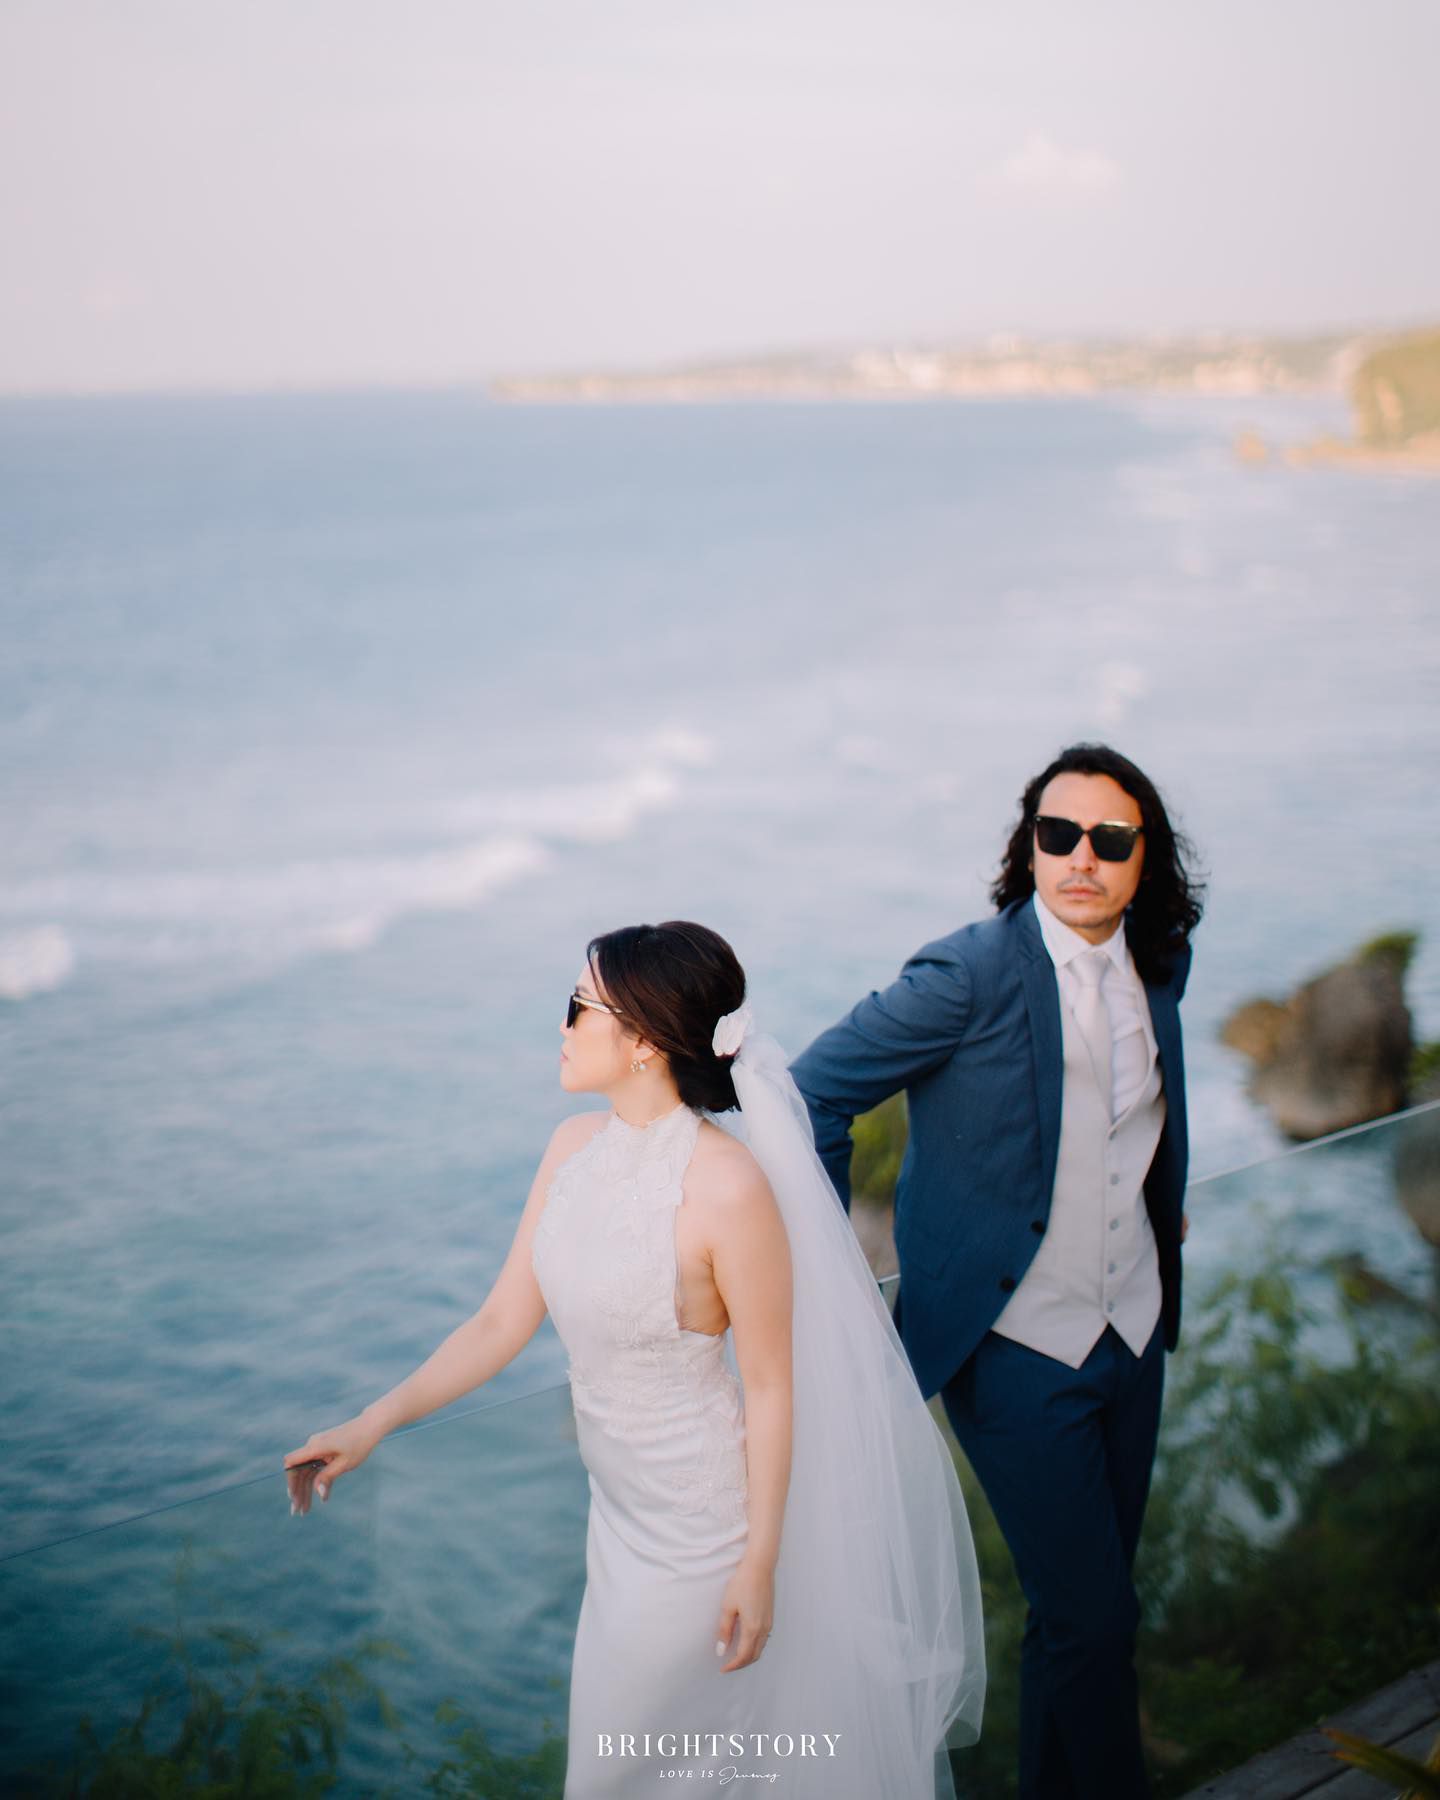 5 Potret Pernikahan Ello dan Cindy Maria, Rayakan Pesta di Tepi Pantai 